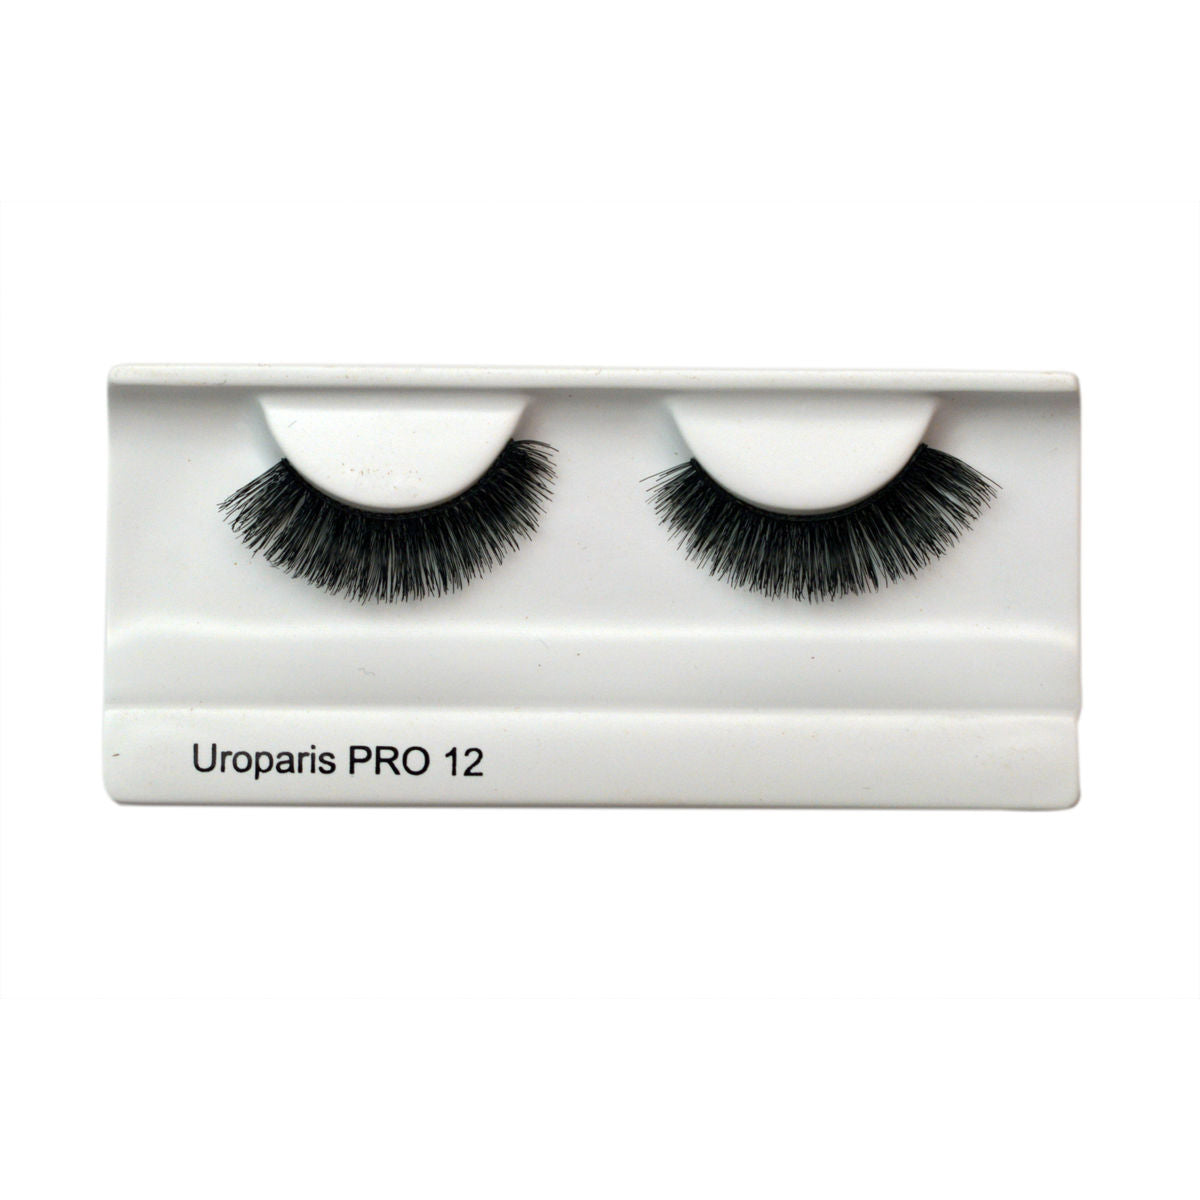 Uroparis Human Hair 3 D Eyelashes Pro12 Black (1 pair) Uroparis